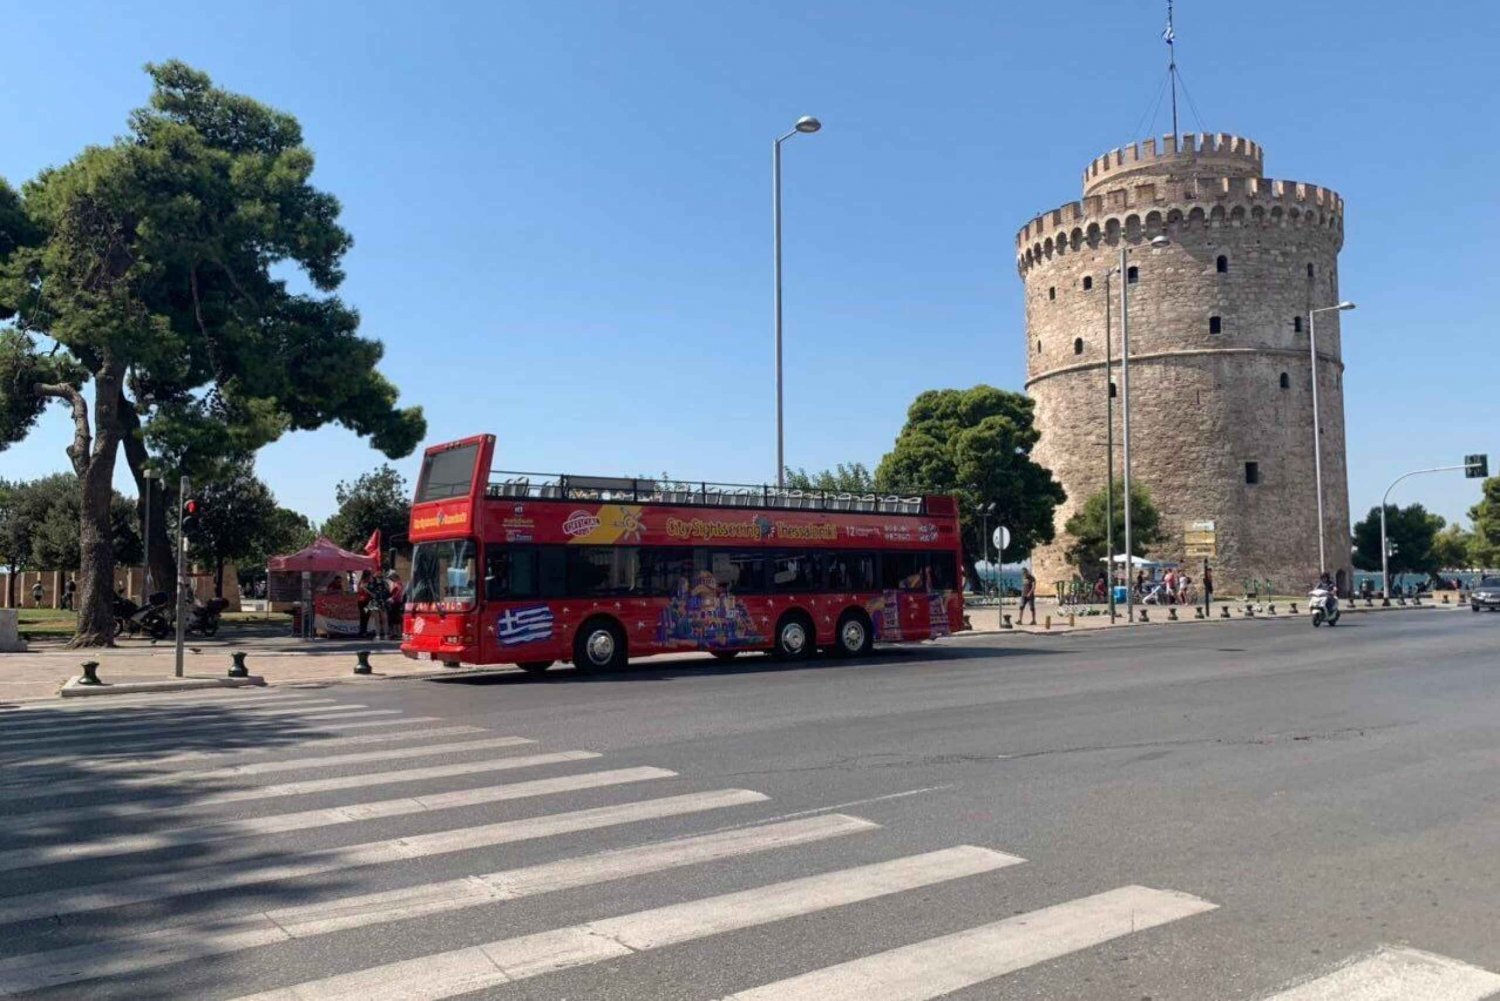 Salonicco: Tour della città in autobus Hop-On Hop-Off